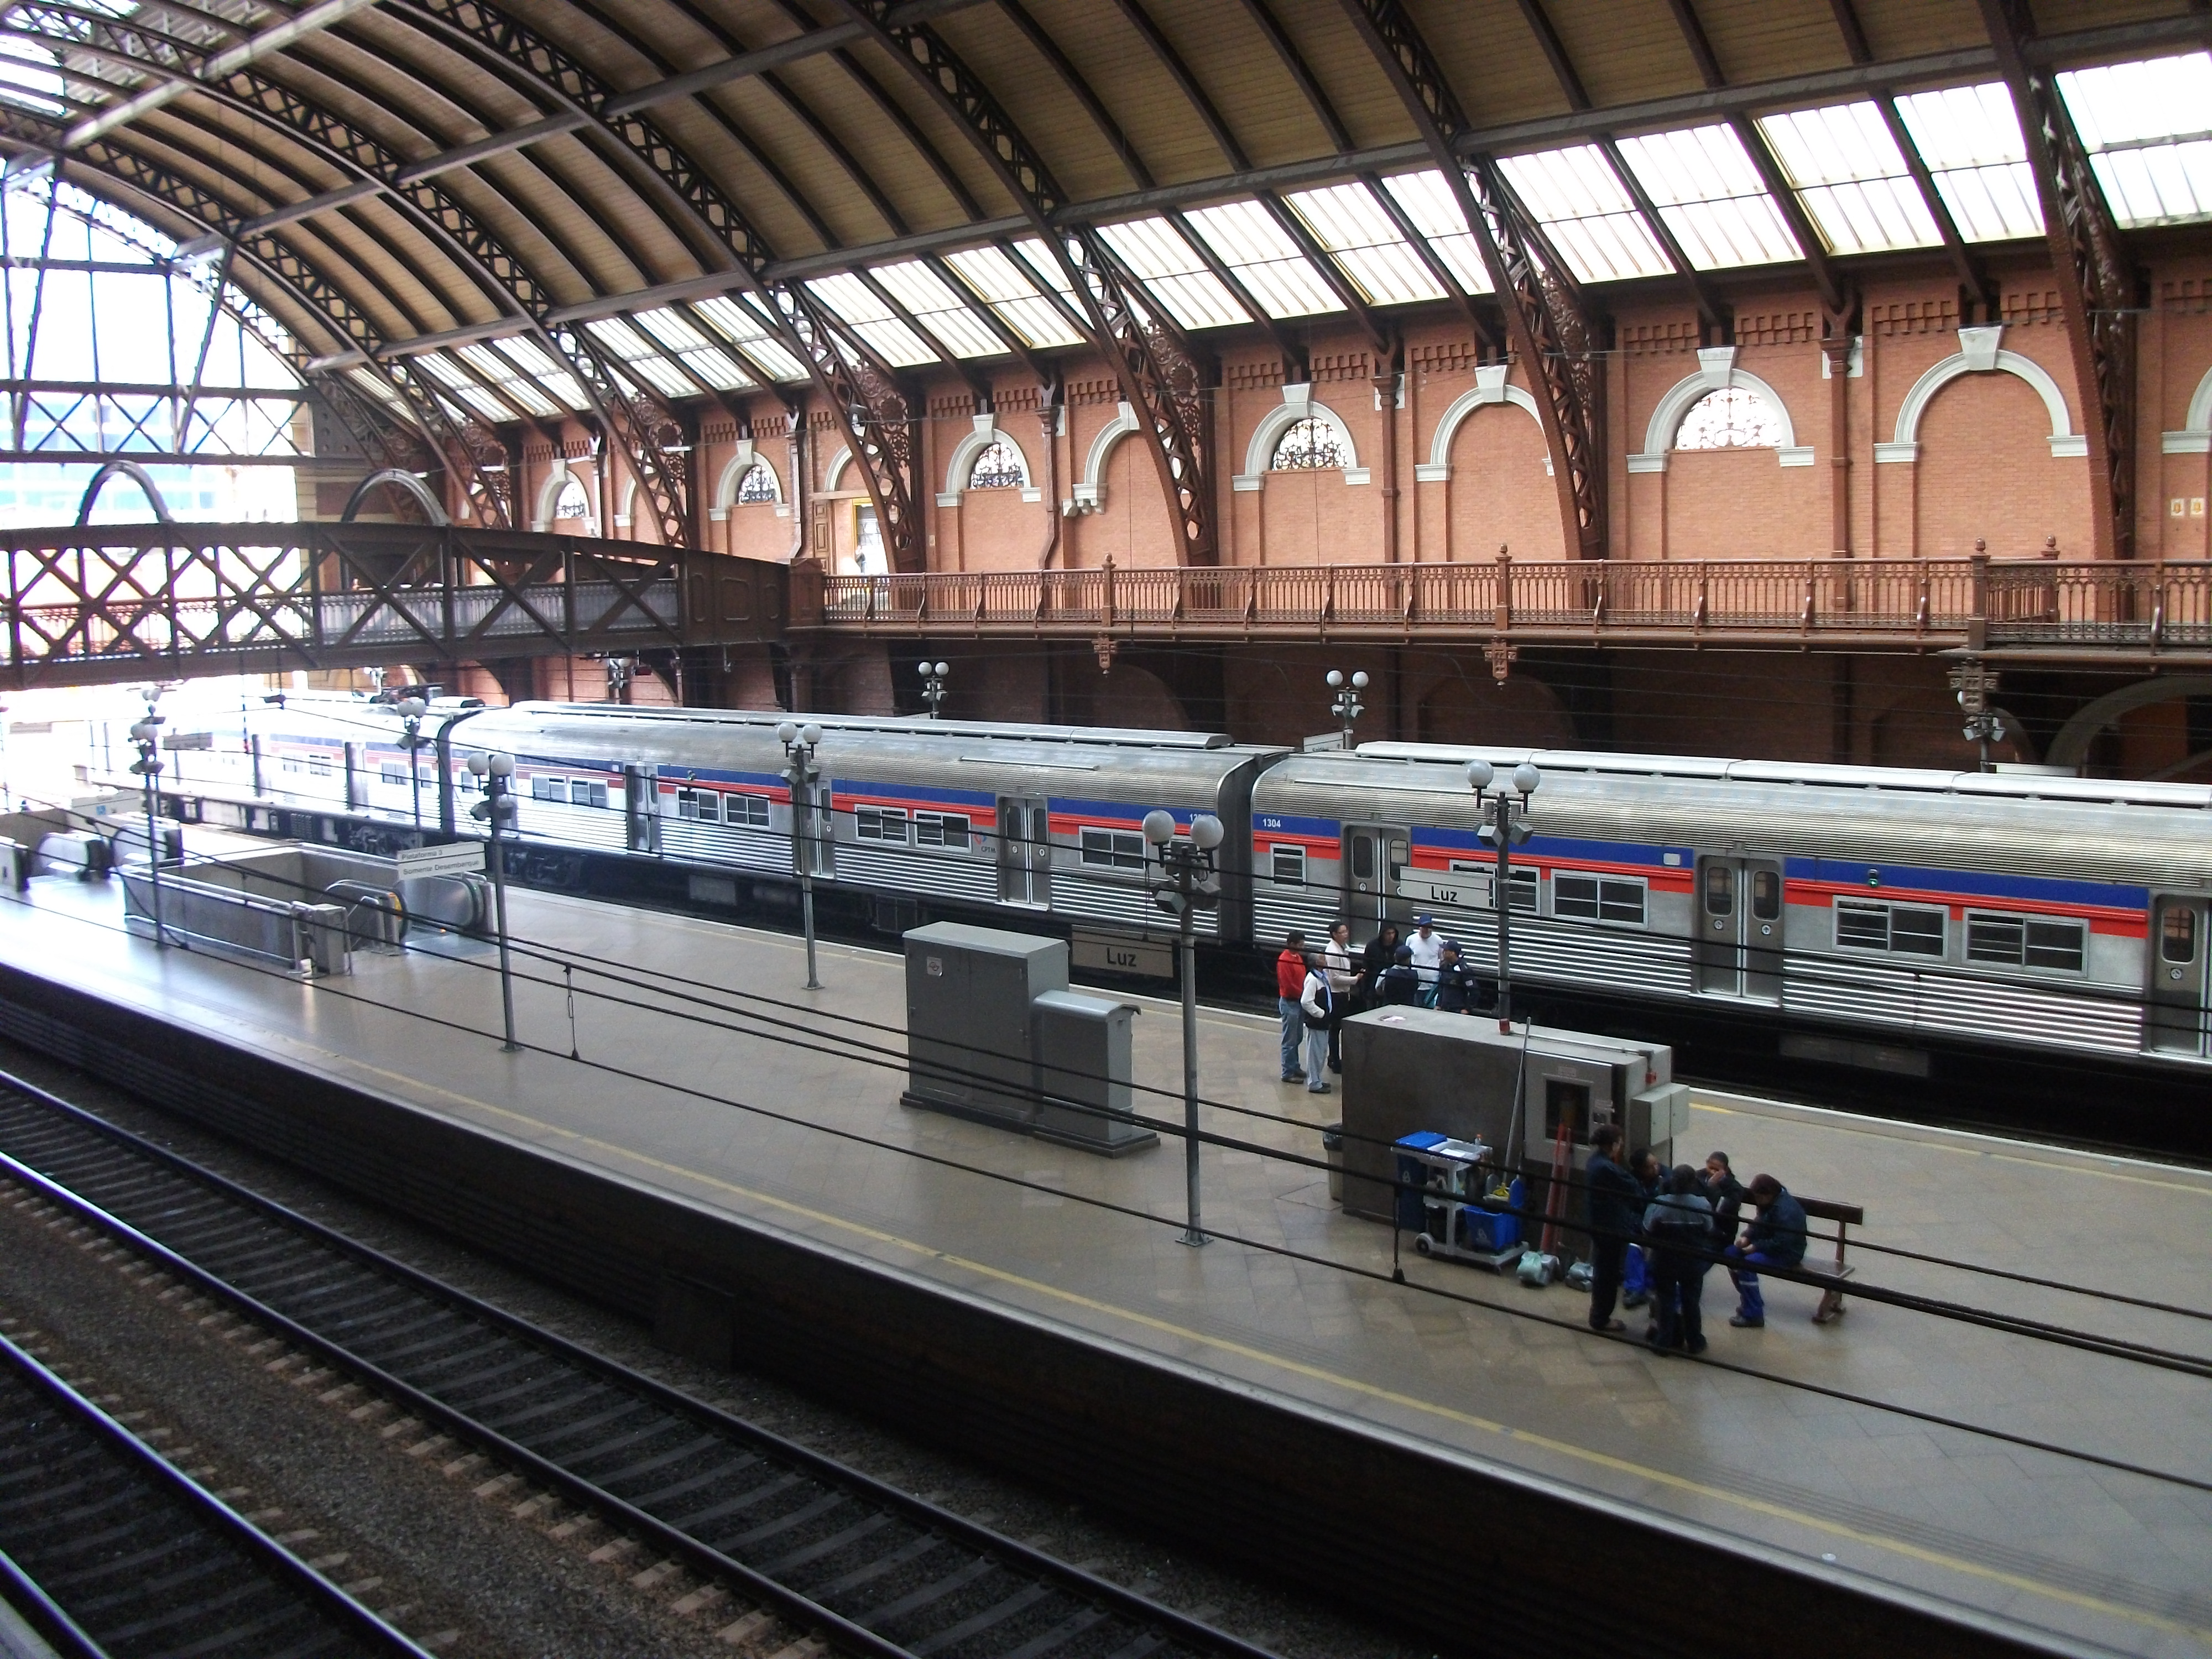 File:Estação da Luz plataforma central.jpg - Wikimedia Commons